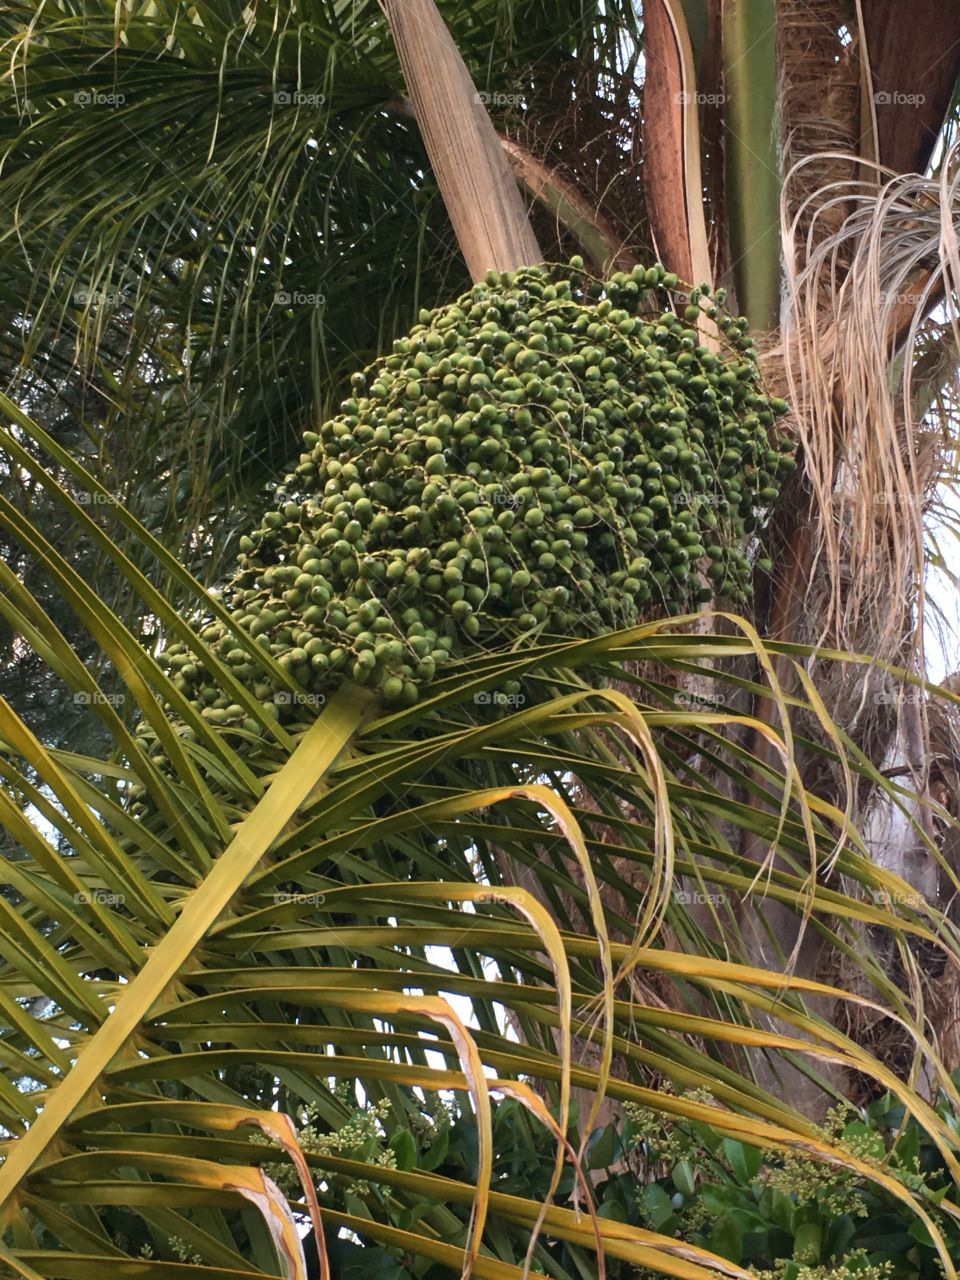 Palm tree seeds